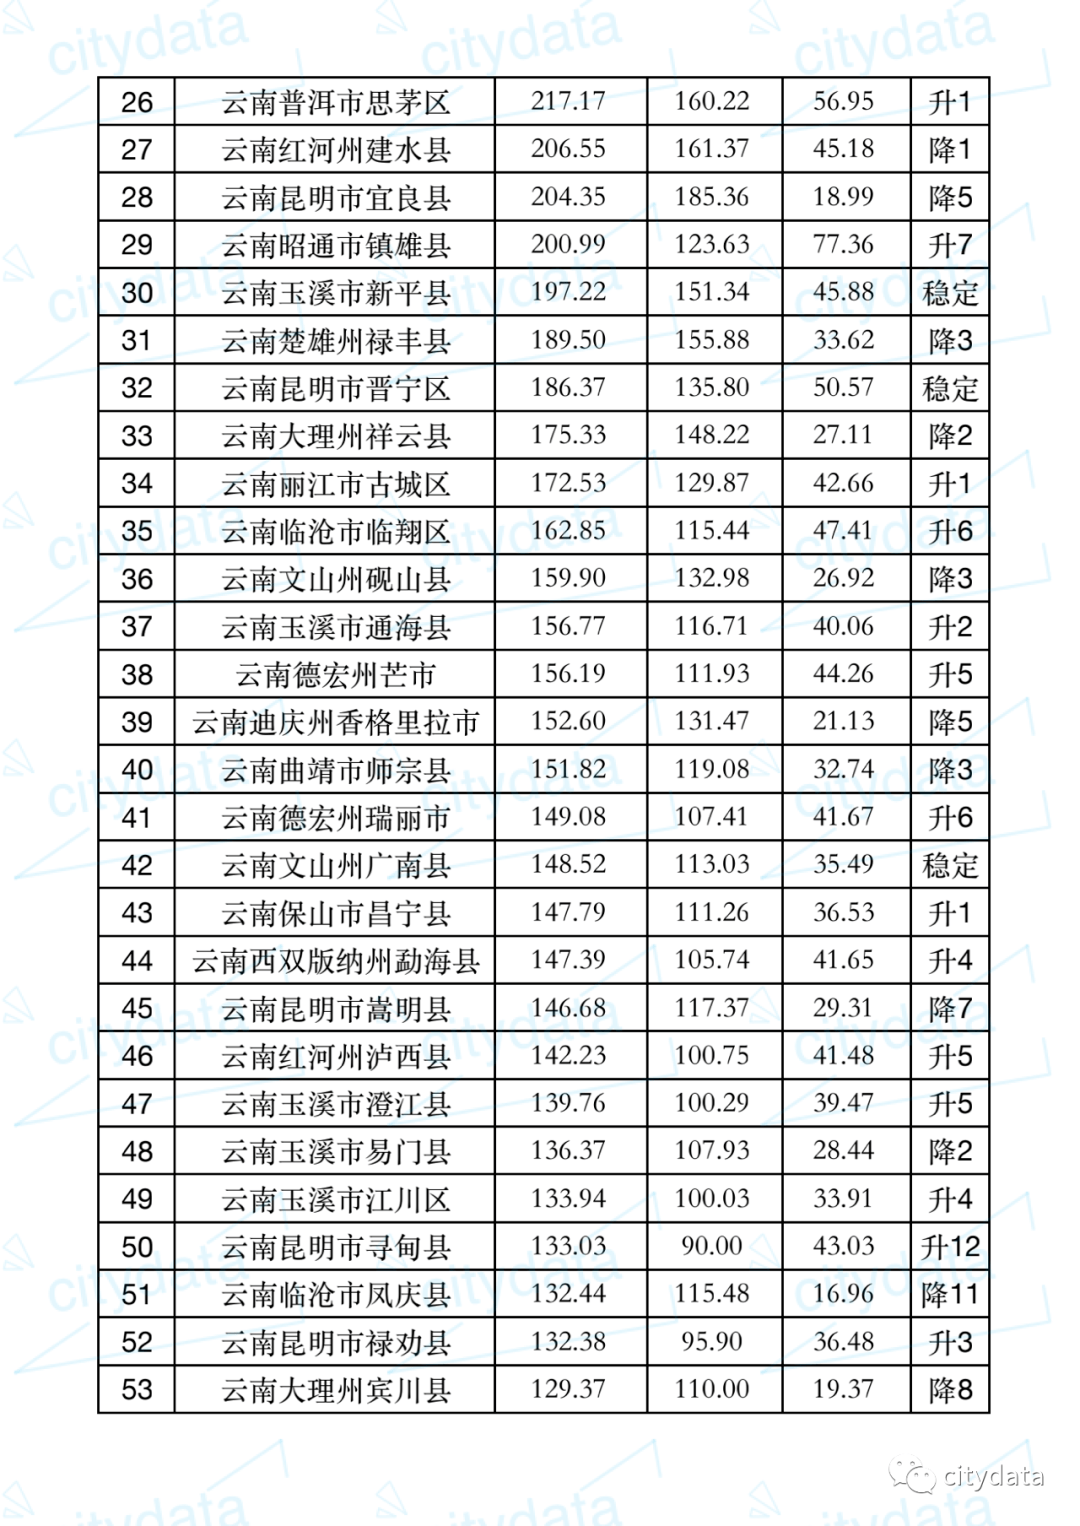 云南德宏州gdp排行榜_云南16州市GDP和房价排行榜 德宏排在